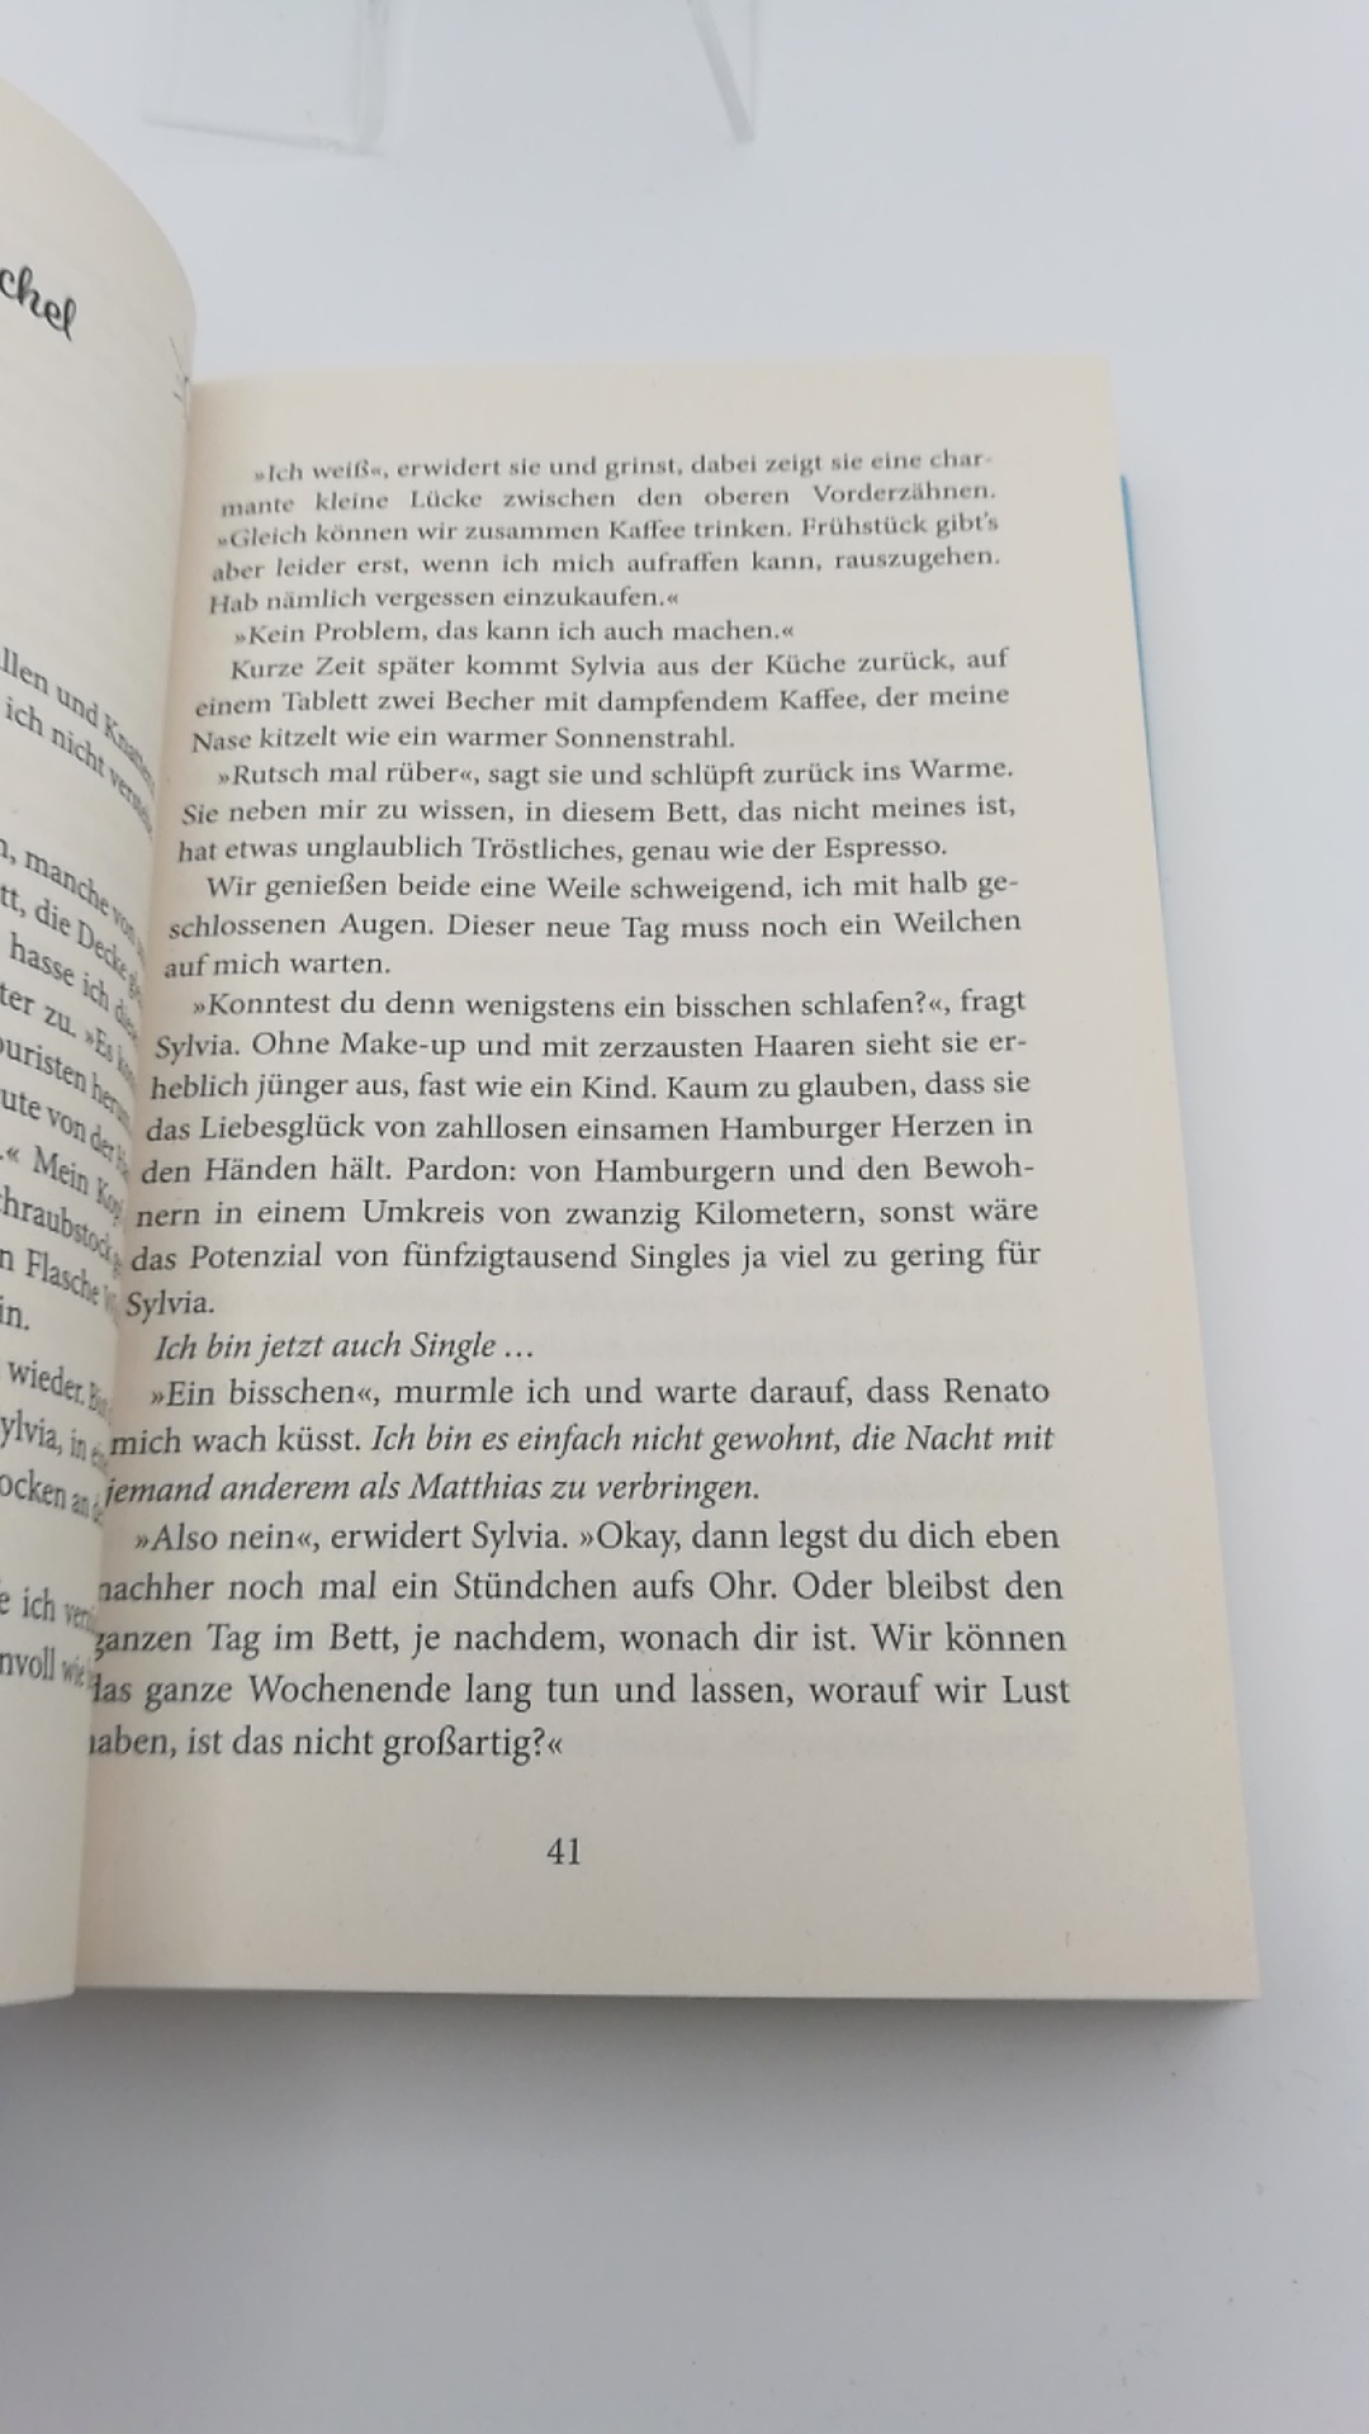 Engelmann, Gabriella (Verfasser): Zu wahr, um schön zu sein Roman / Gabriella Engelmann